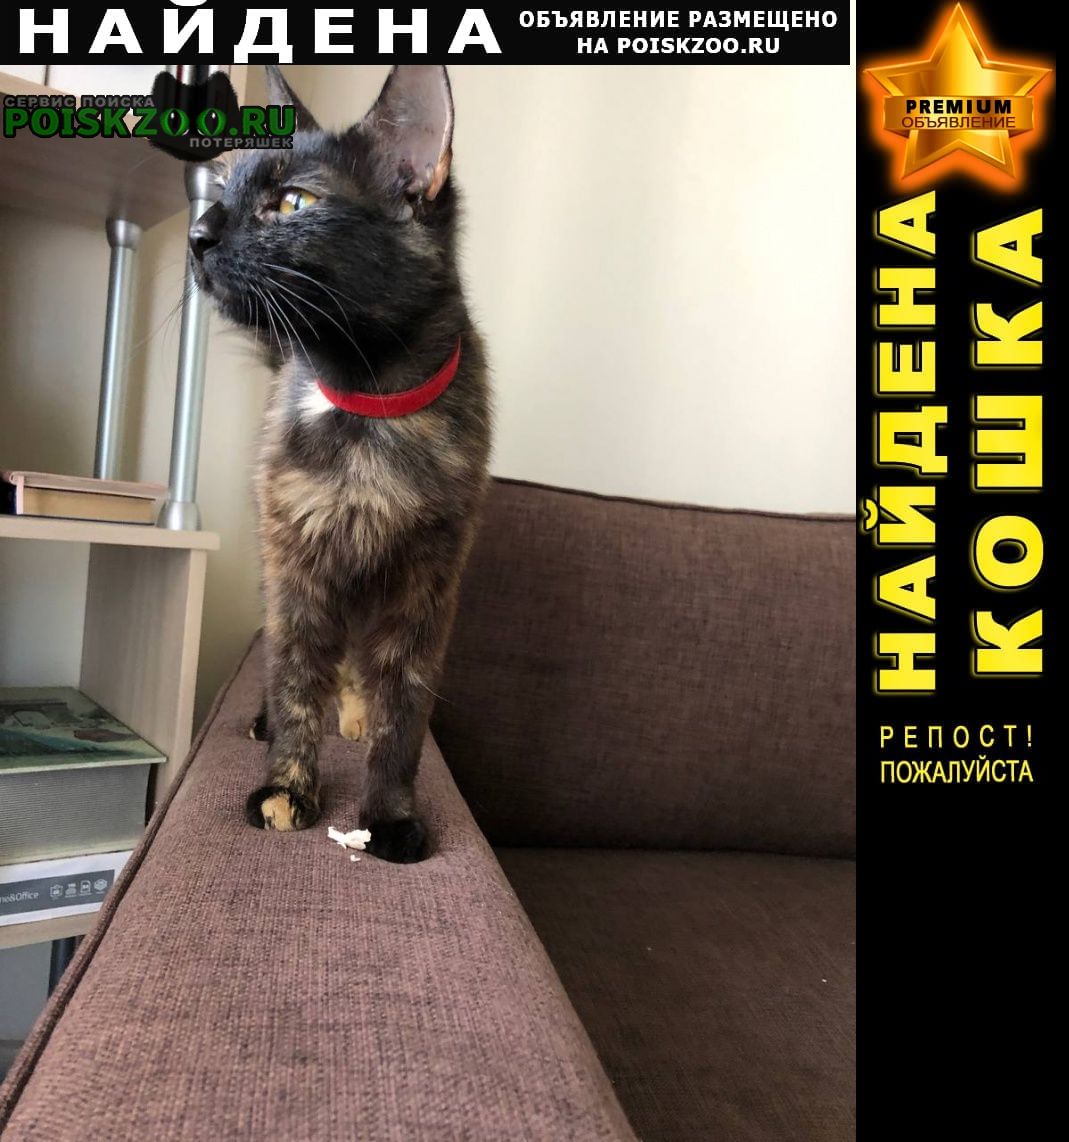 Найдена кошка девочка, на шее красный ошейник Москва